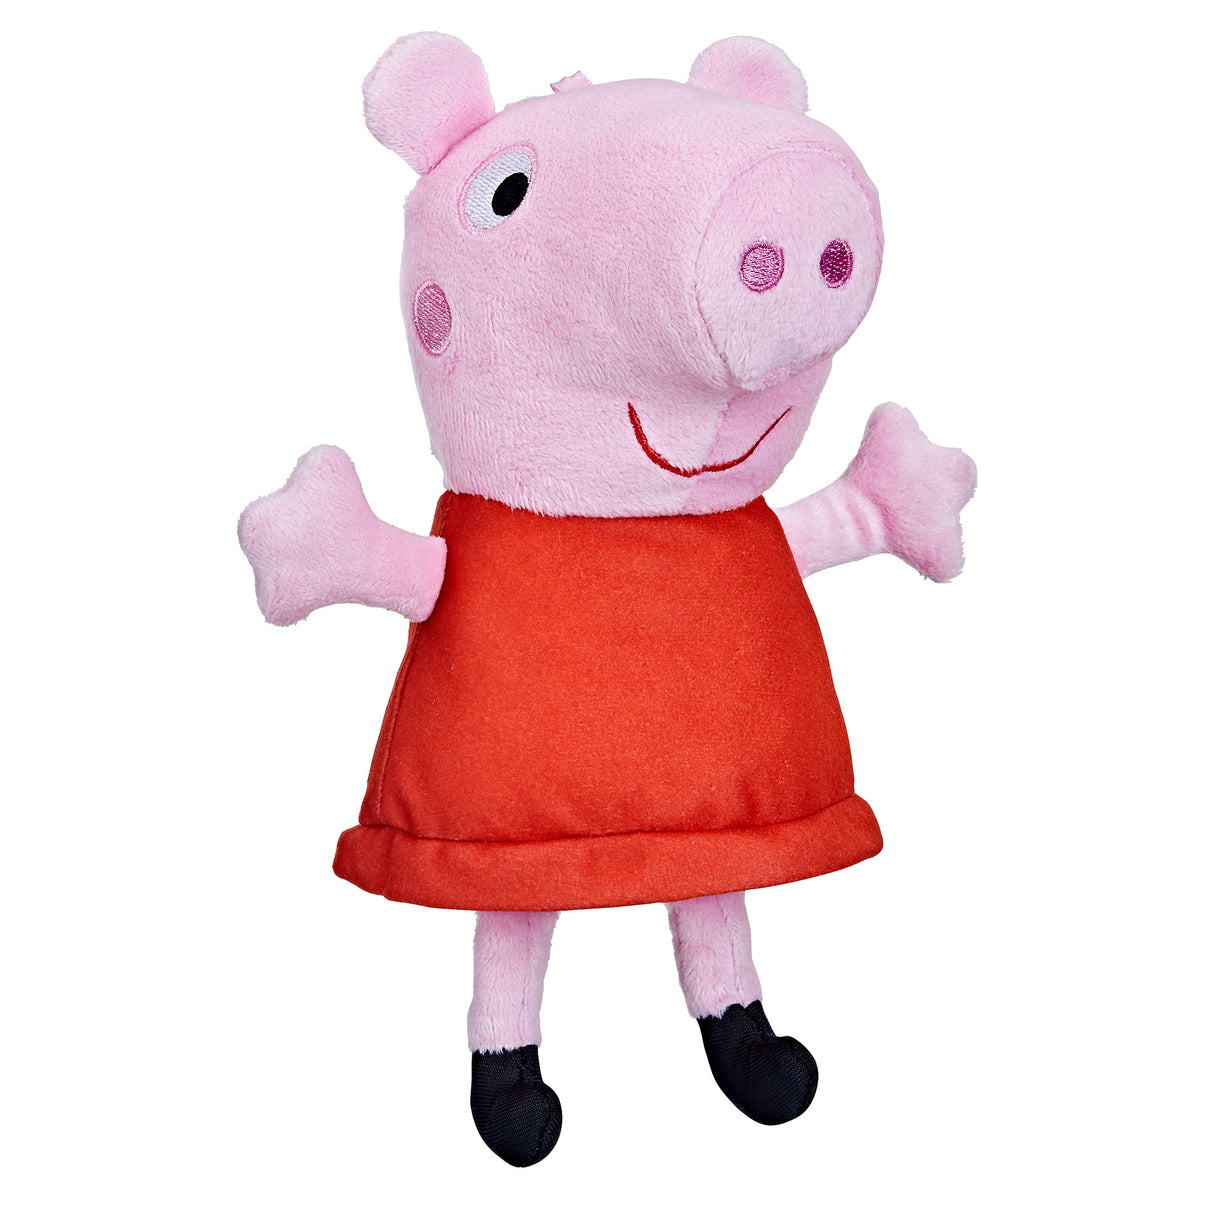 Peppa Pig Peppa Plush Toy